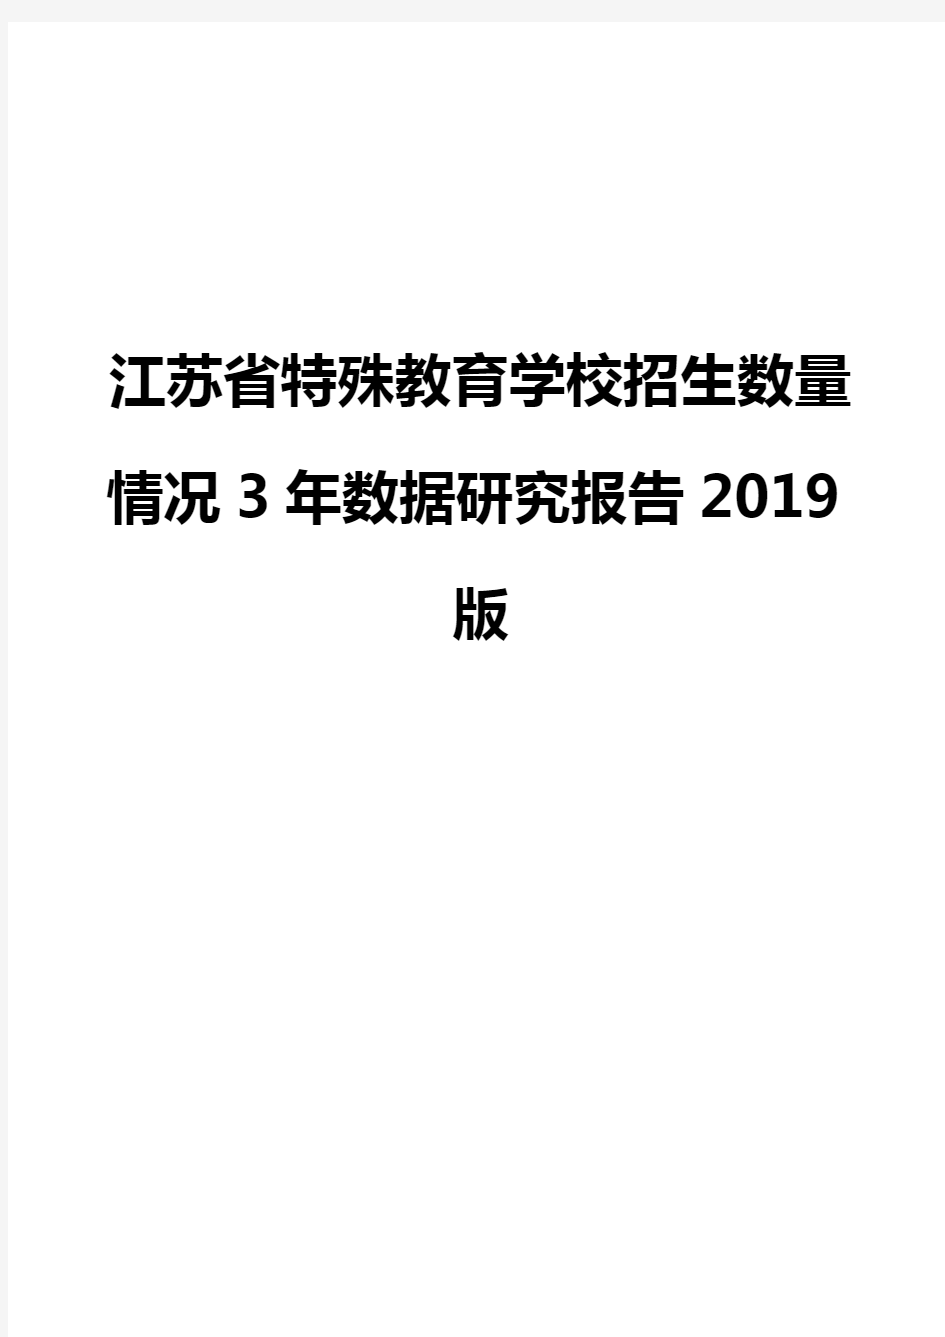 江苏省特殊教育学校招生数量情况3年数据研究报告2019版